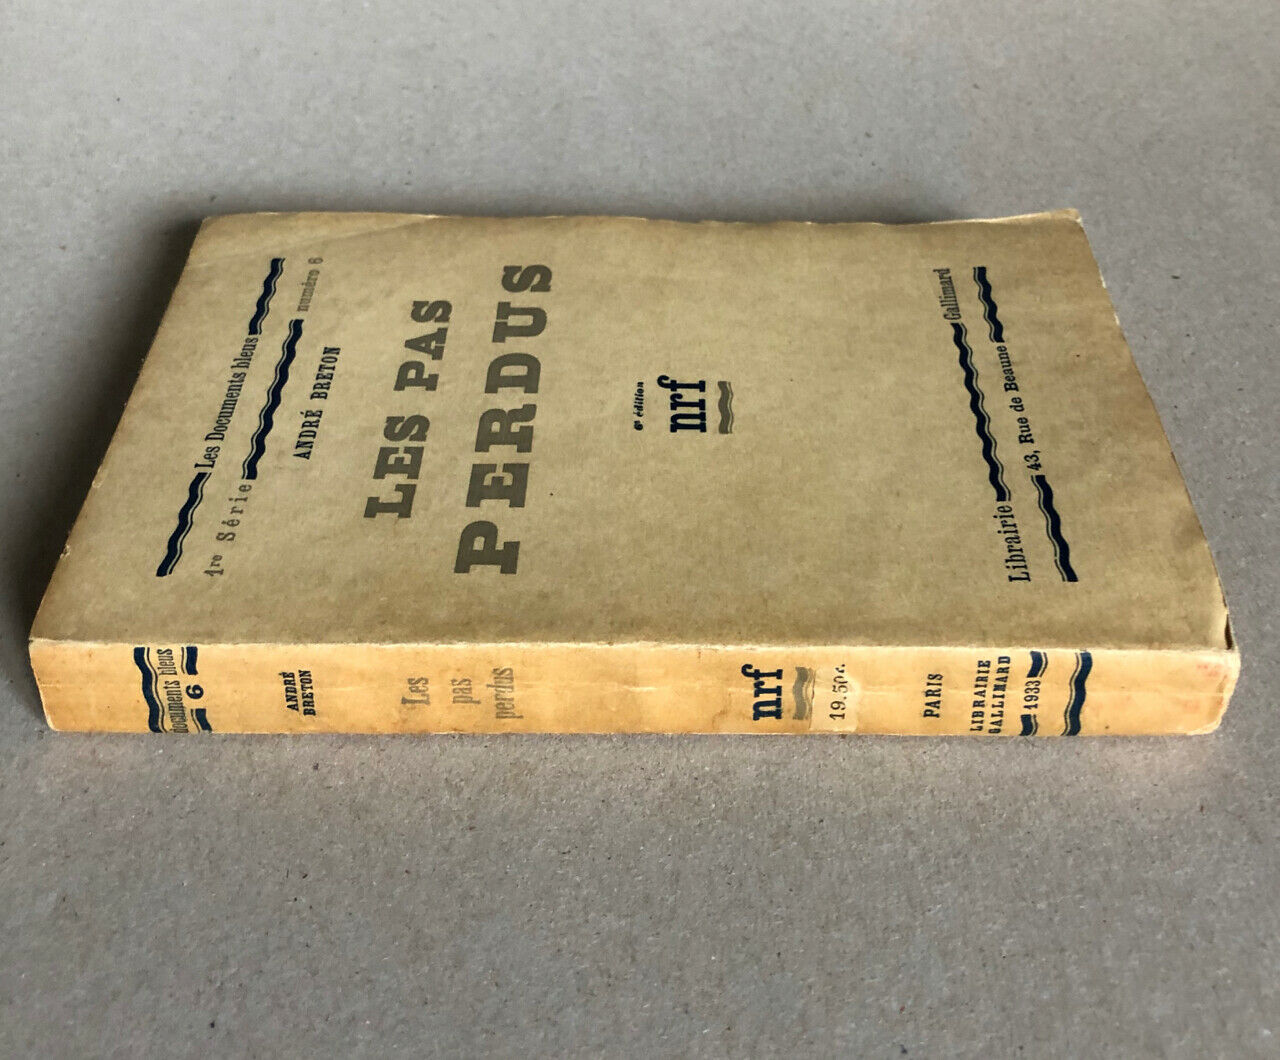 André Breton — Les Pas Perdus — É.O. with edition statement — Gallimard — 1924.